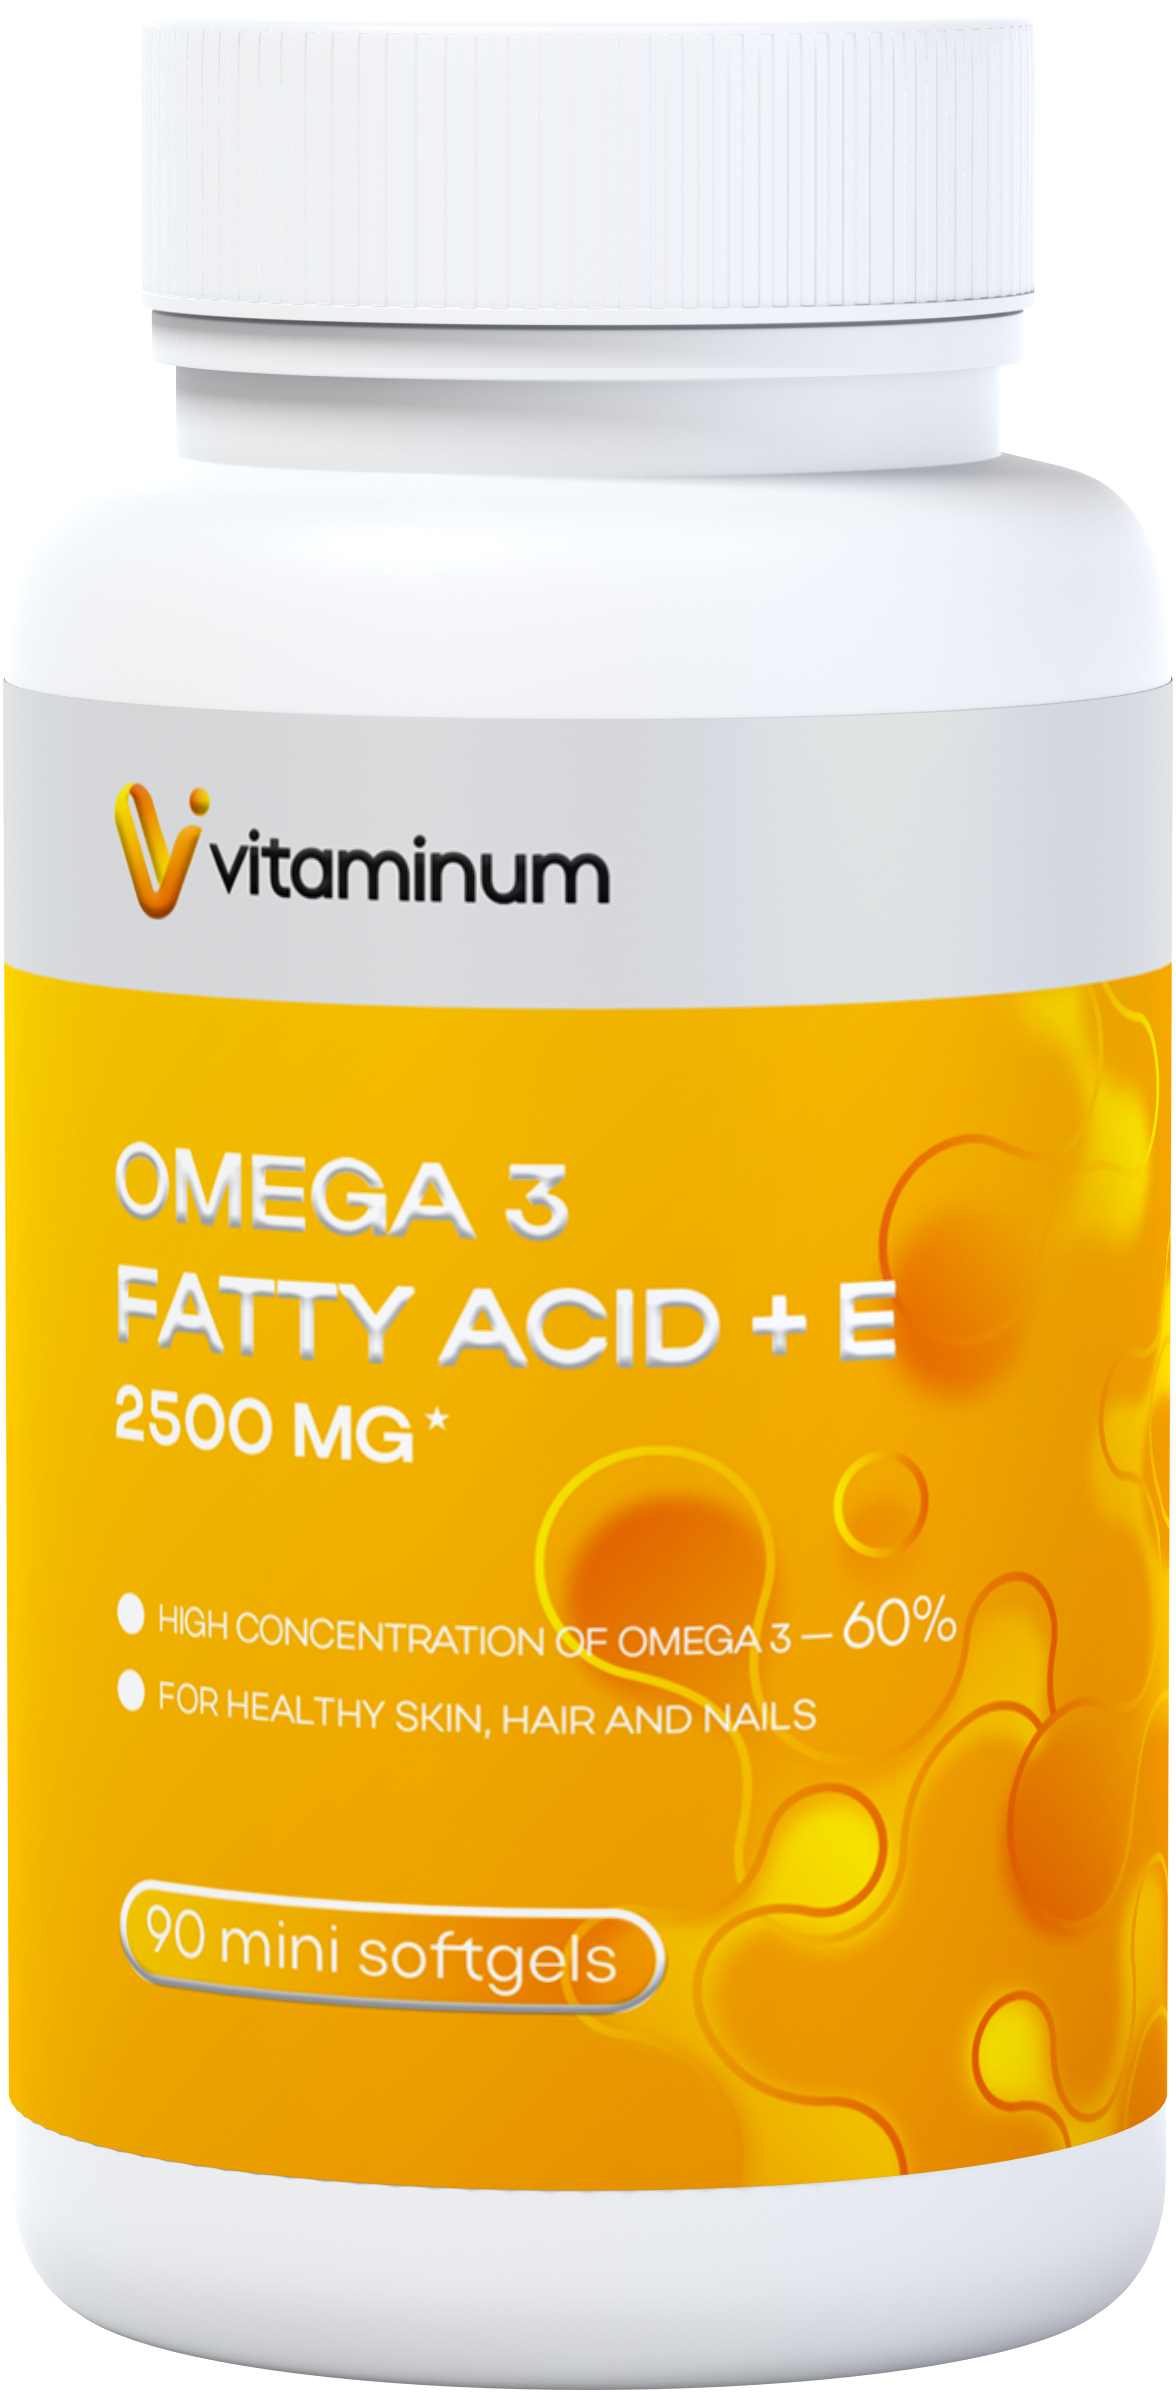  Vitaminum ОМЕГА 3 60% + витамин Е (2500 MG*) 90 капсул 700 мг   в Сарапуле